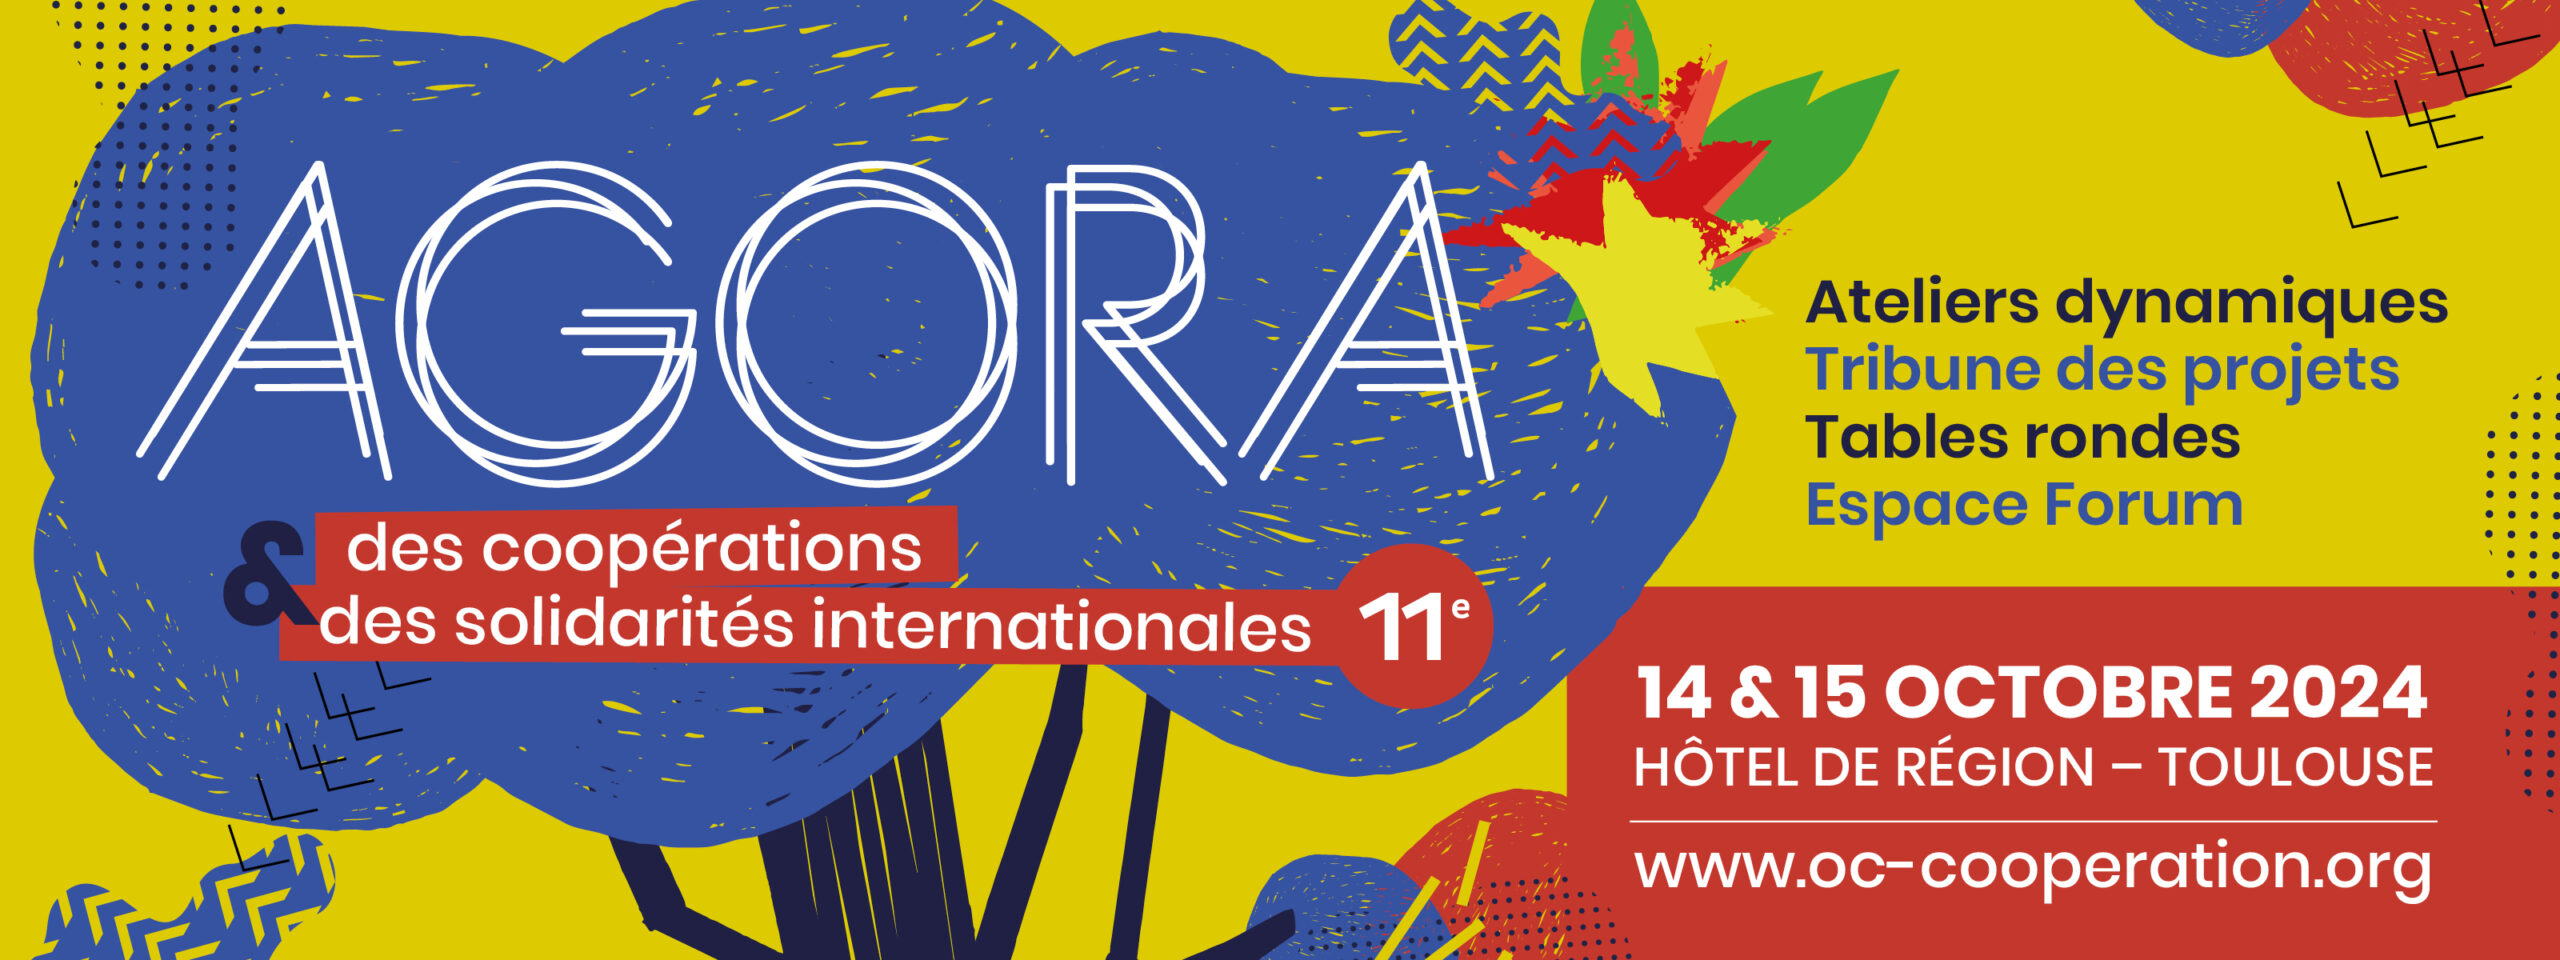 À vos agendas pour la 11e Agora des coopérations et des solidarités internationales